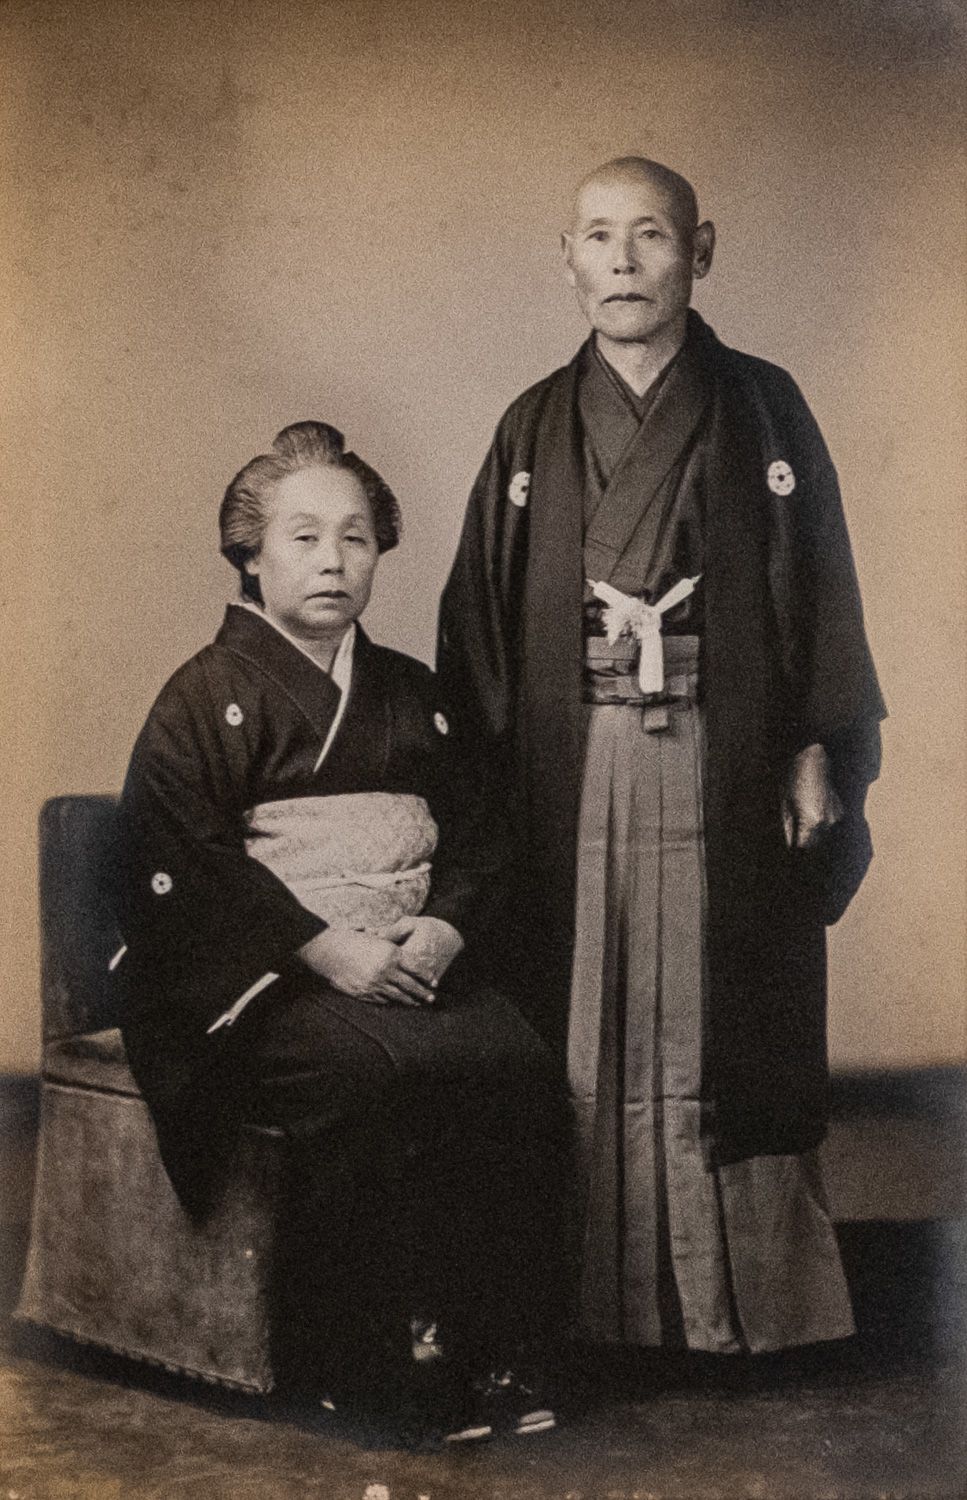 كوبوتا توموتوشي، على اليمين، مع زوجته، بصفته رئيسًا لأكواريوم هاكوزاكي، لقد أحسن إدارة المنشأة وعمل بجد على تثقيف الجمهور. (إهداء من هانادا نوريكو)